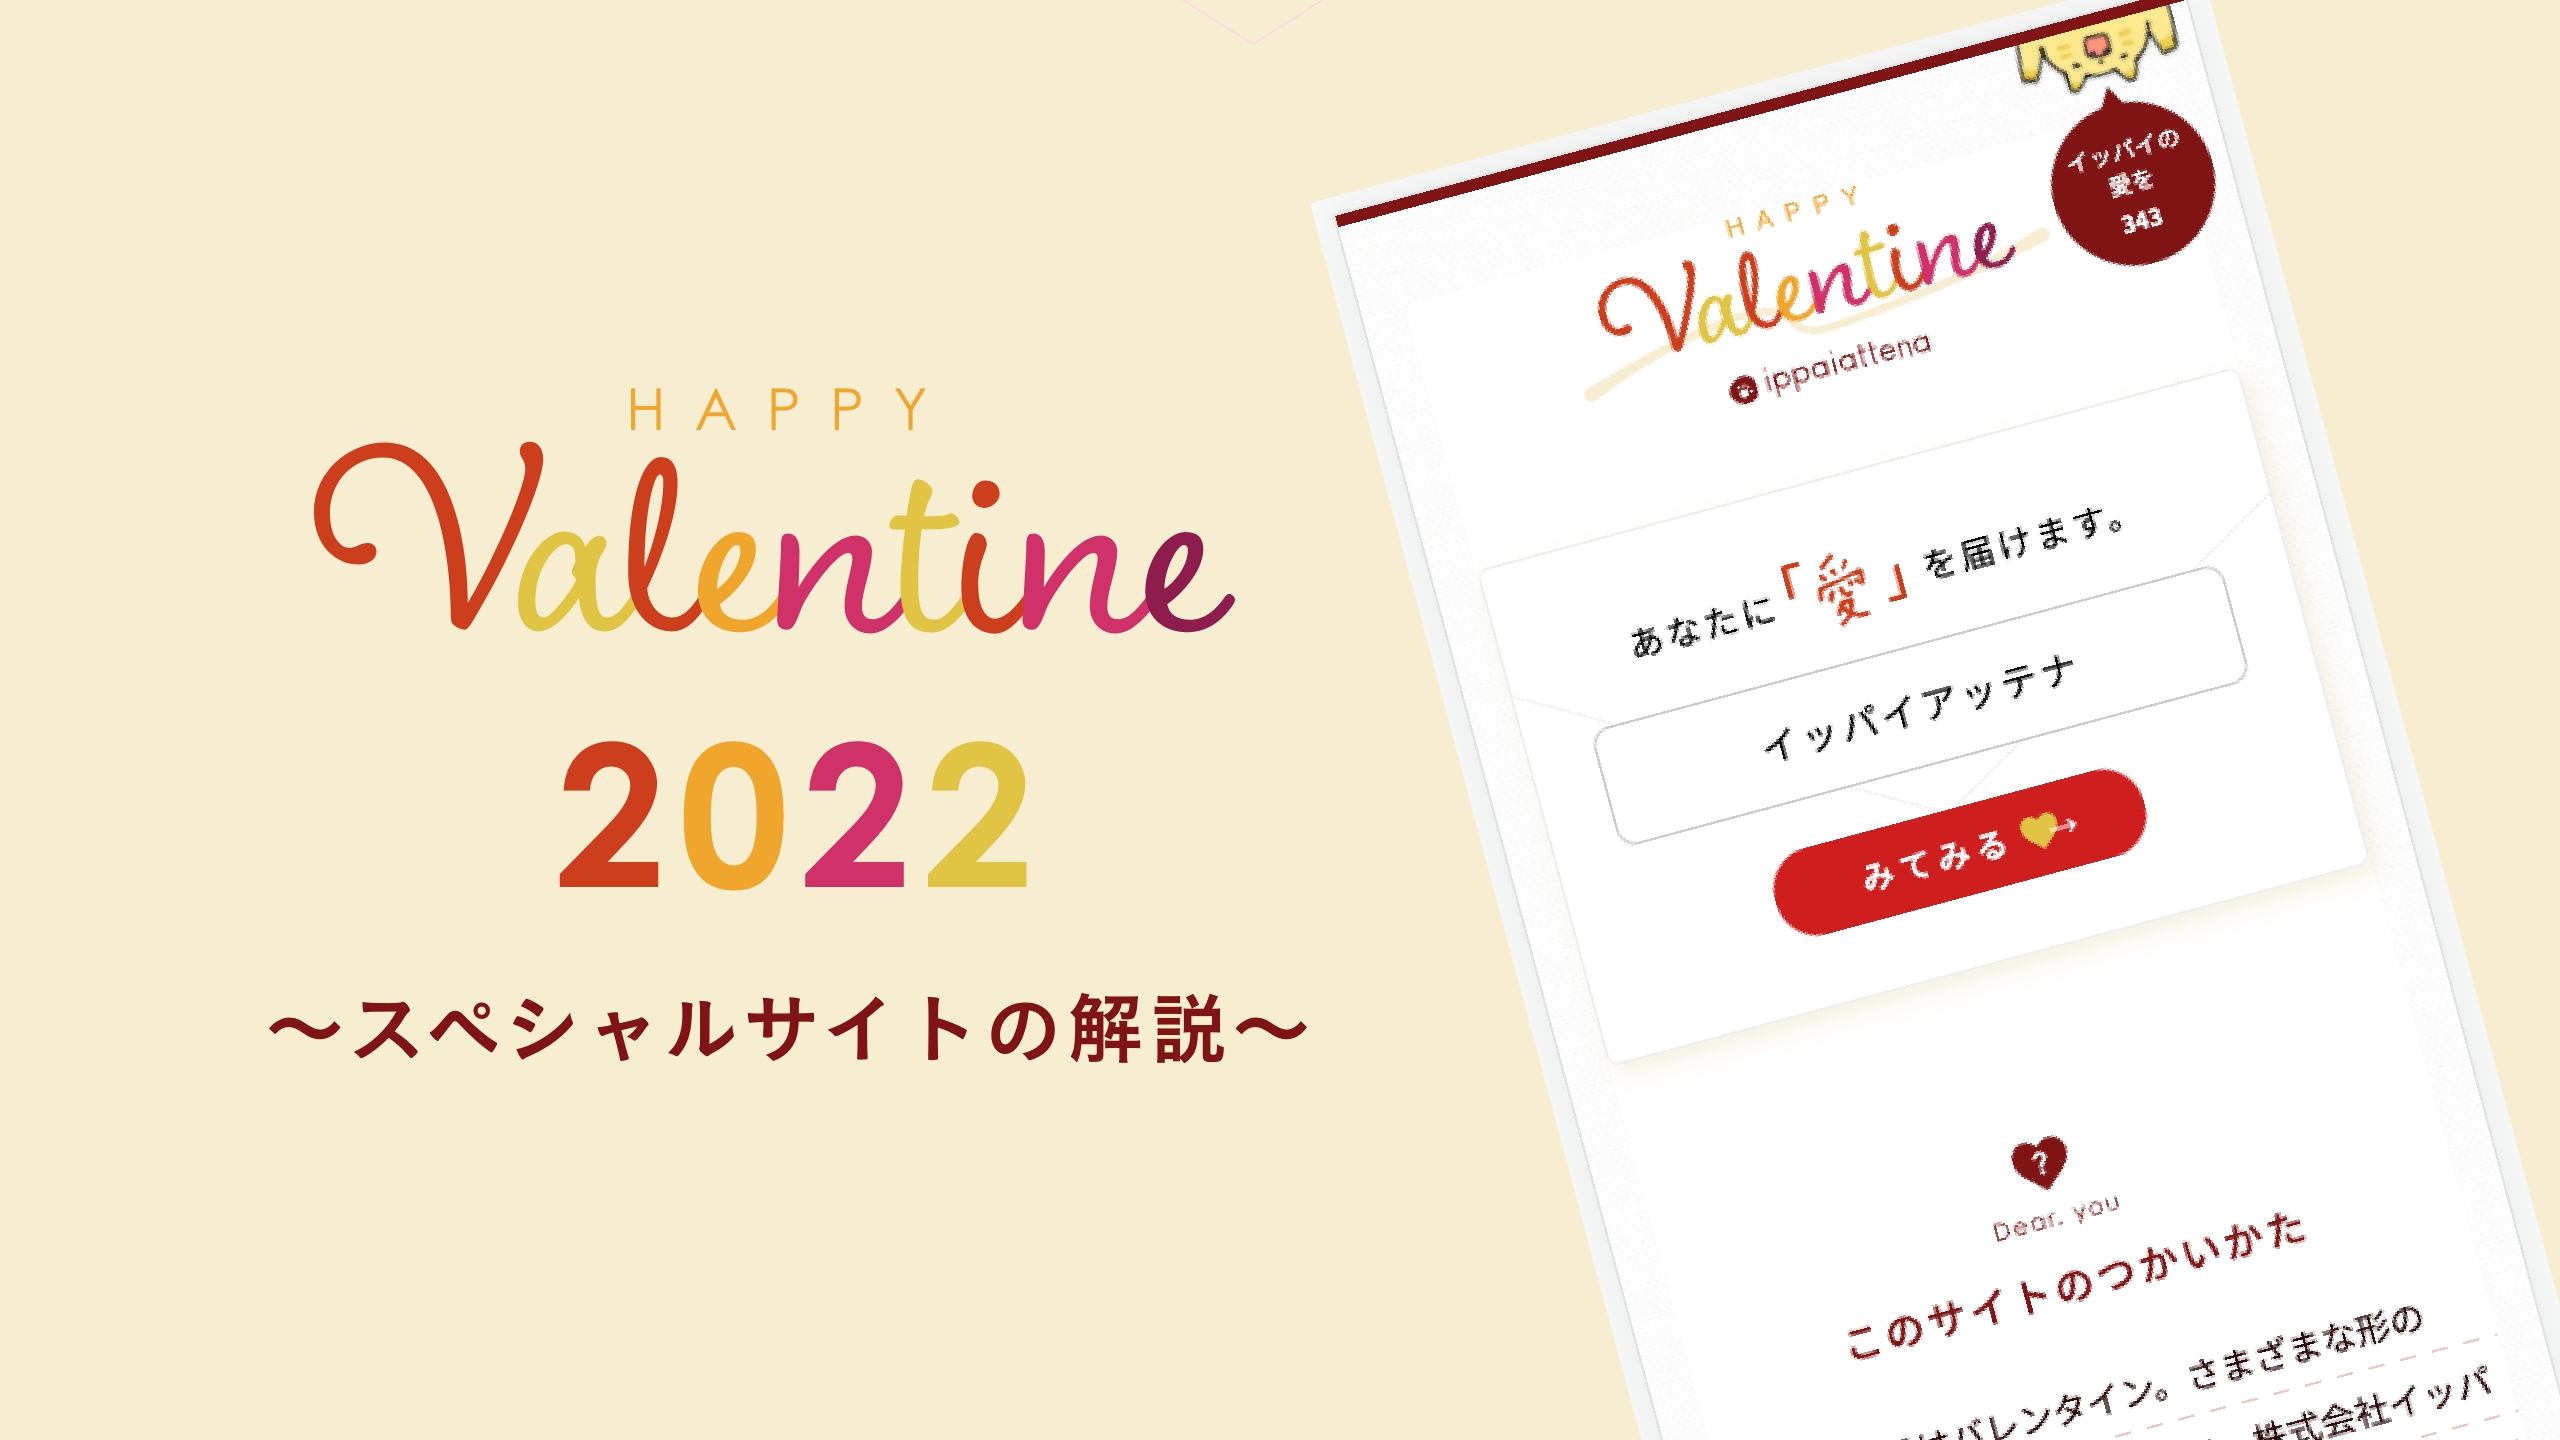 「イッパイの愛を。」バレンタイン2022のスペシャルサイトの解説